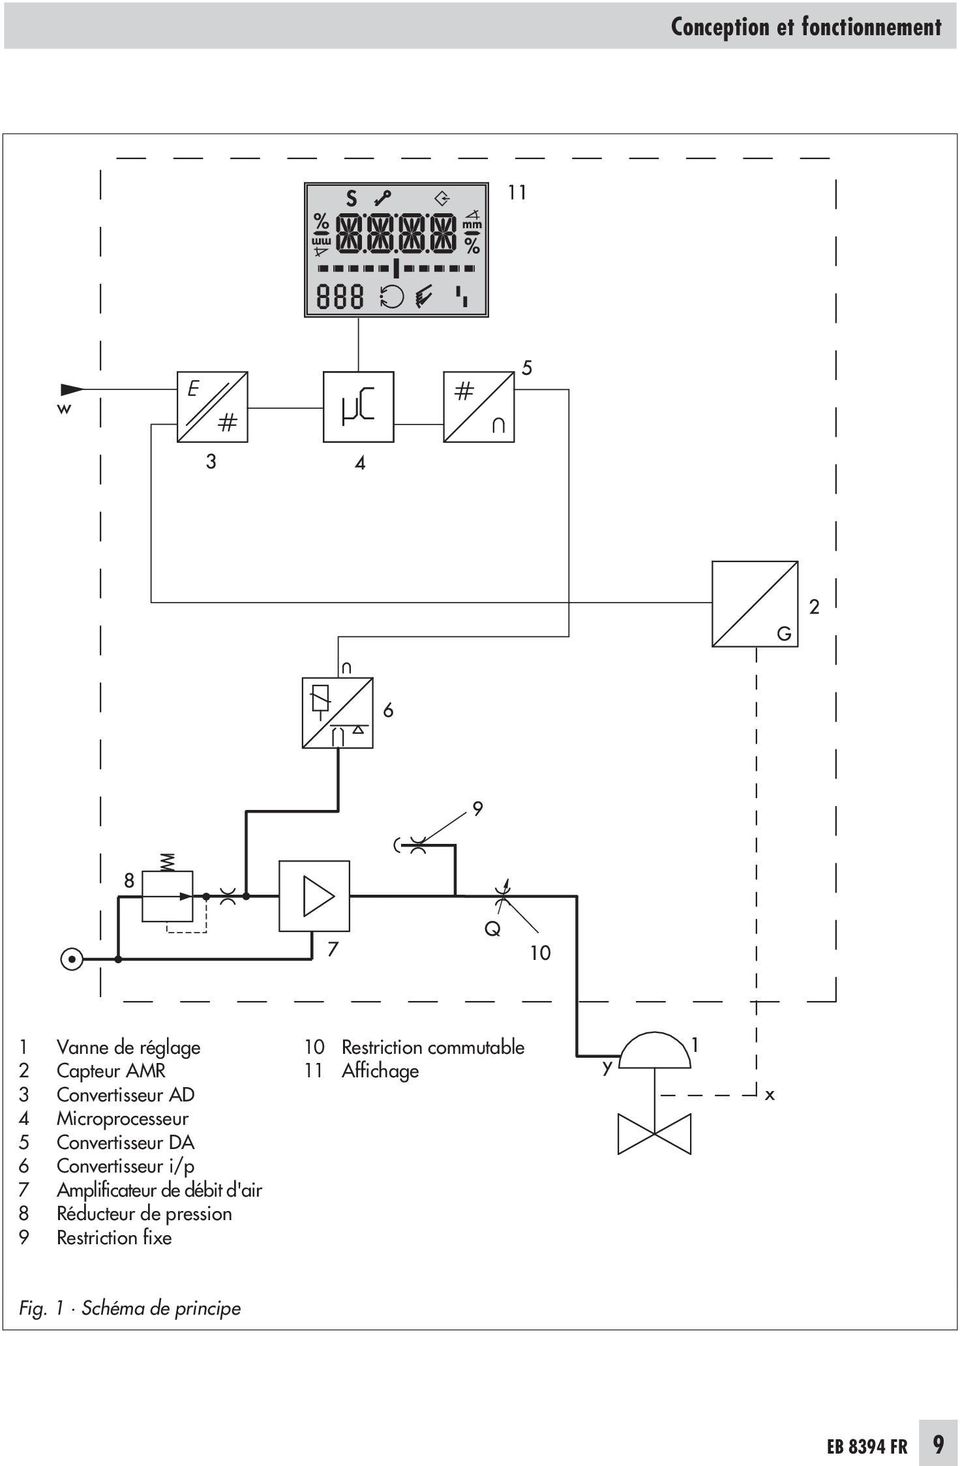 i/p 7 Amplificateur de débit d'air 8 Réducteur de pression 9 Restriction